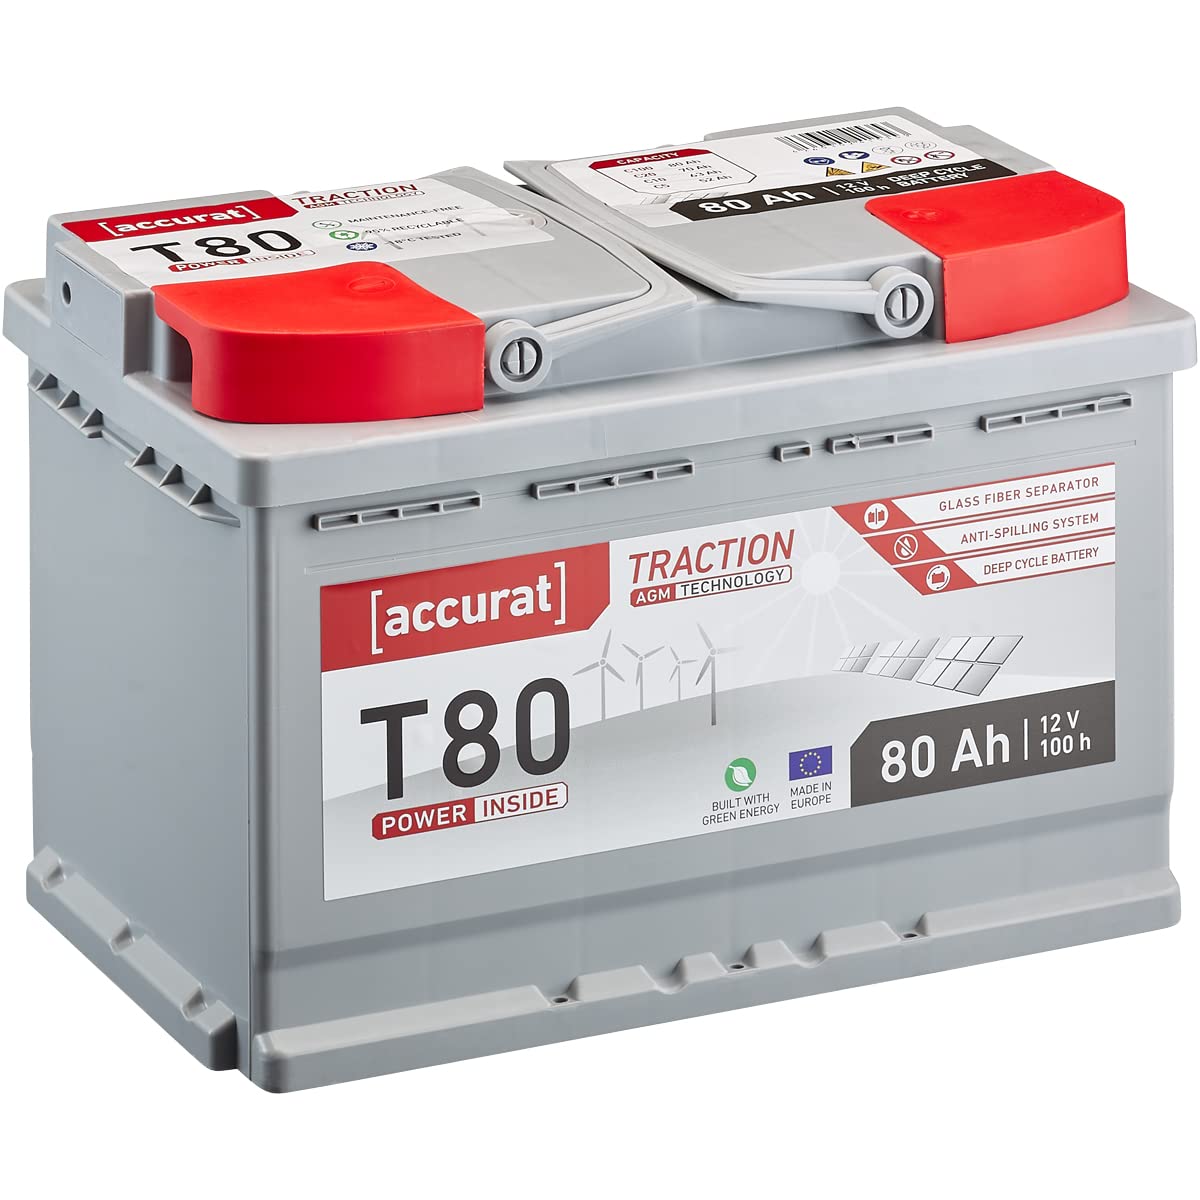 Accurat Traction T80 AGM Batterie - 12V, 80Ah, zyklenfest, bis 30% mehr Kapazität - VRLA Versorgungsbatterie, Bootsbatterie, Solarbatterie für Wohnwagen, Wohnmobil, Camper von Accurat